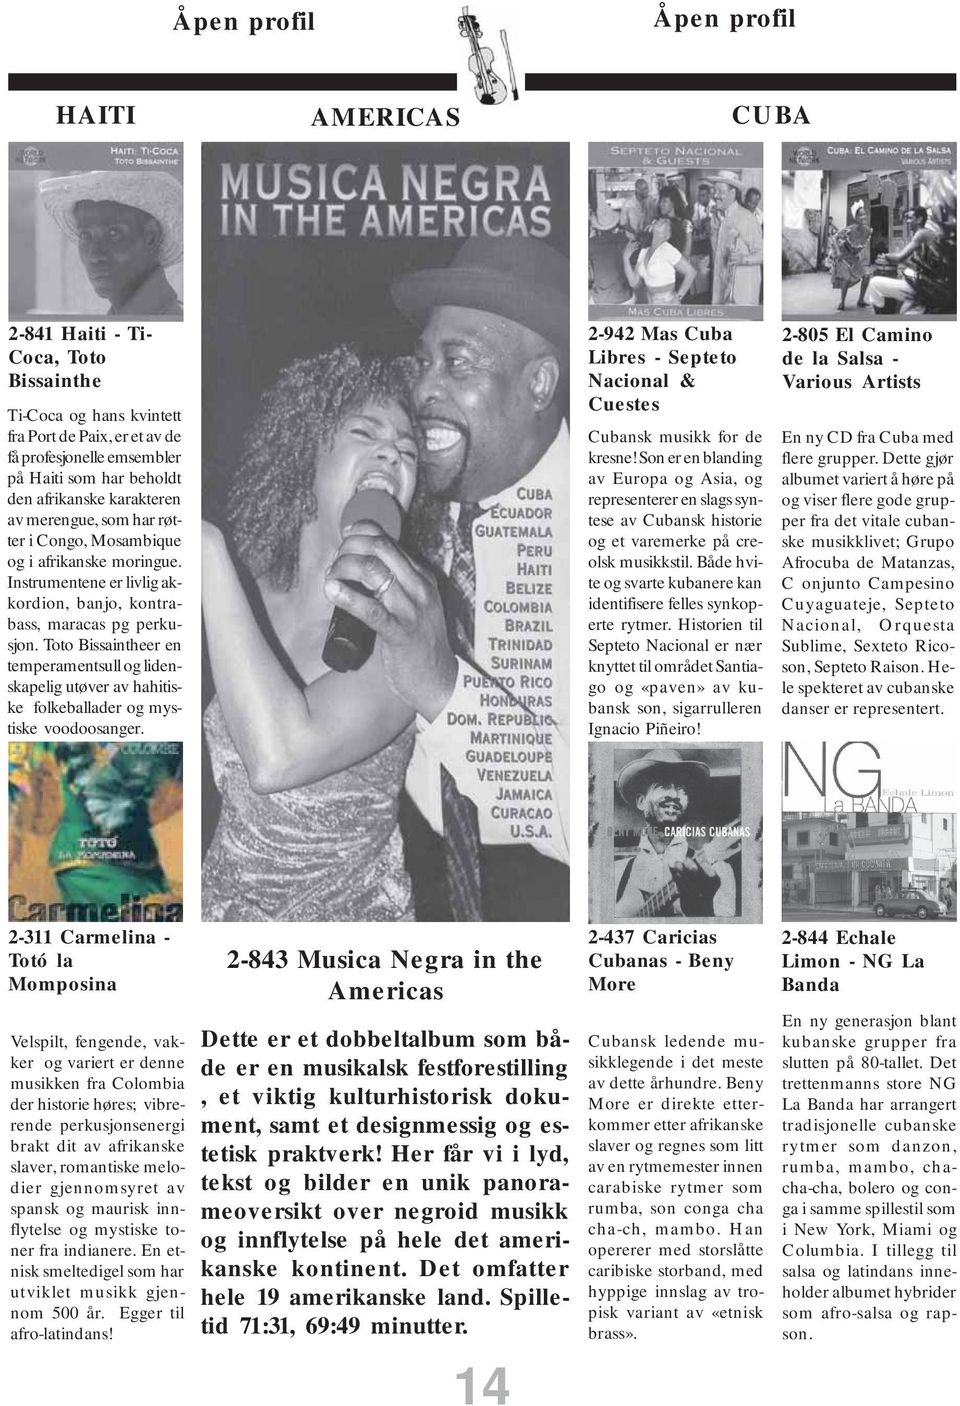 Toto Bissaintheer en temperamentsull og lidenskapelig utøver av hahitiske folkeballader og mystiske voodoosanger. 2-942 Mas Cuba Libres - Septeto Nacional & Cuestes Cubansk musikk for de kresne!